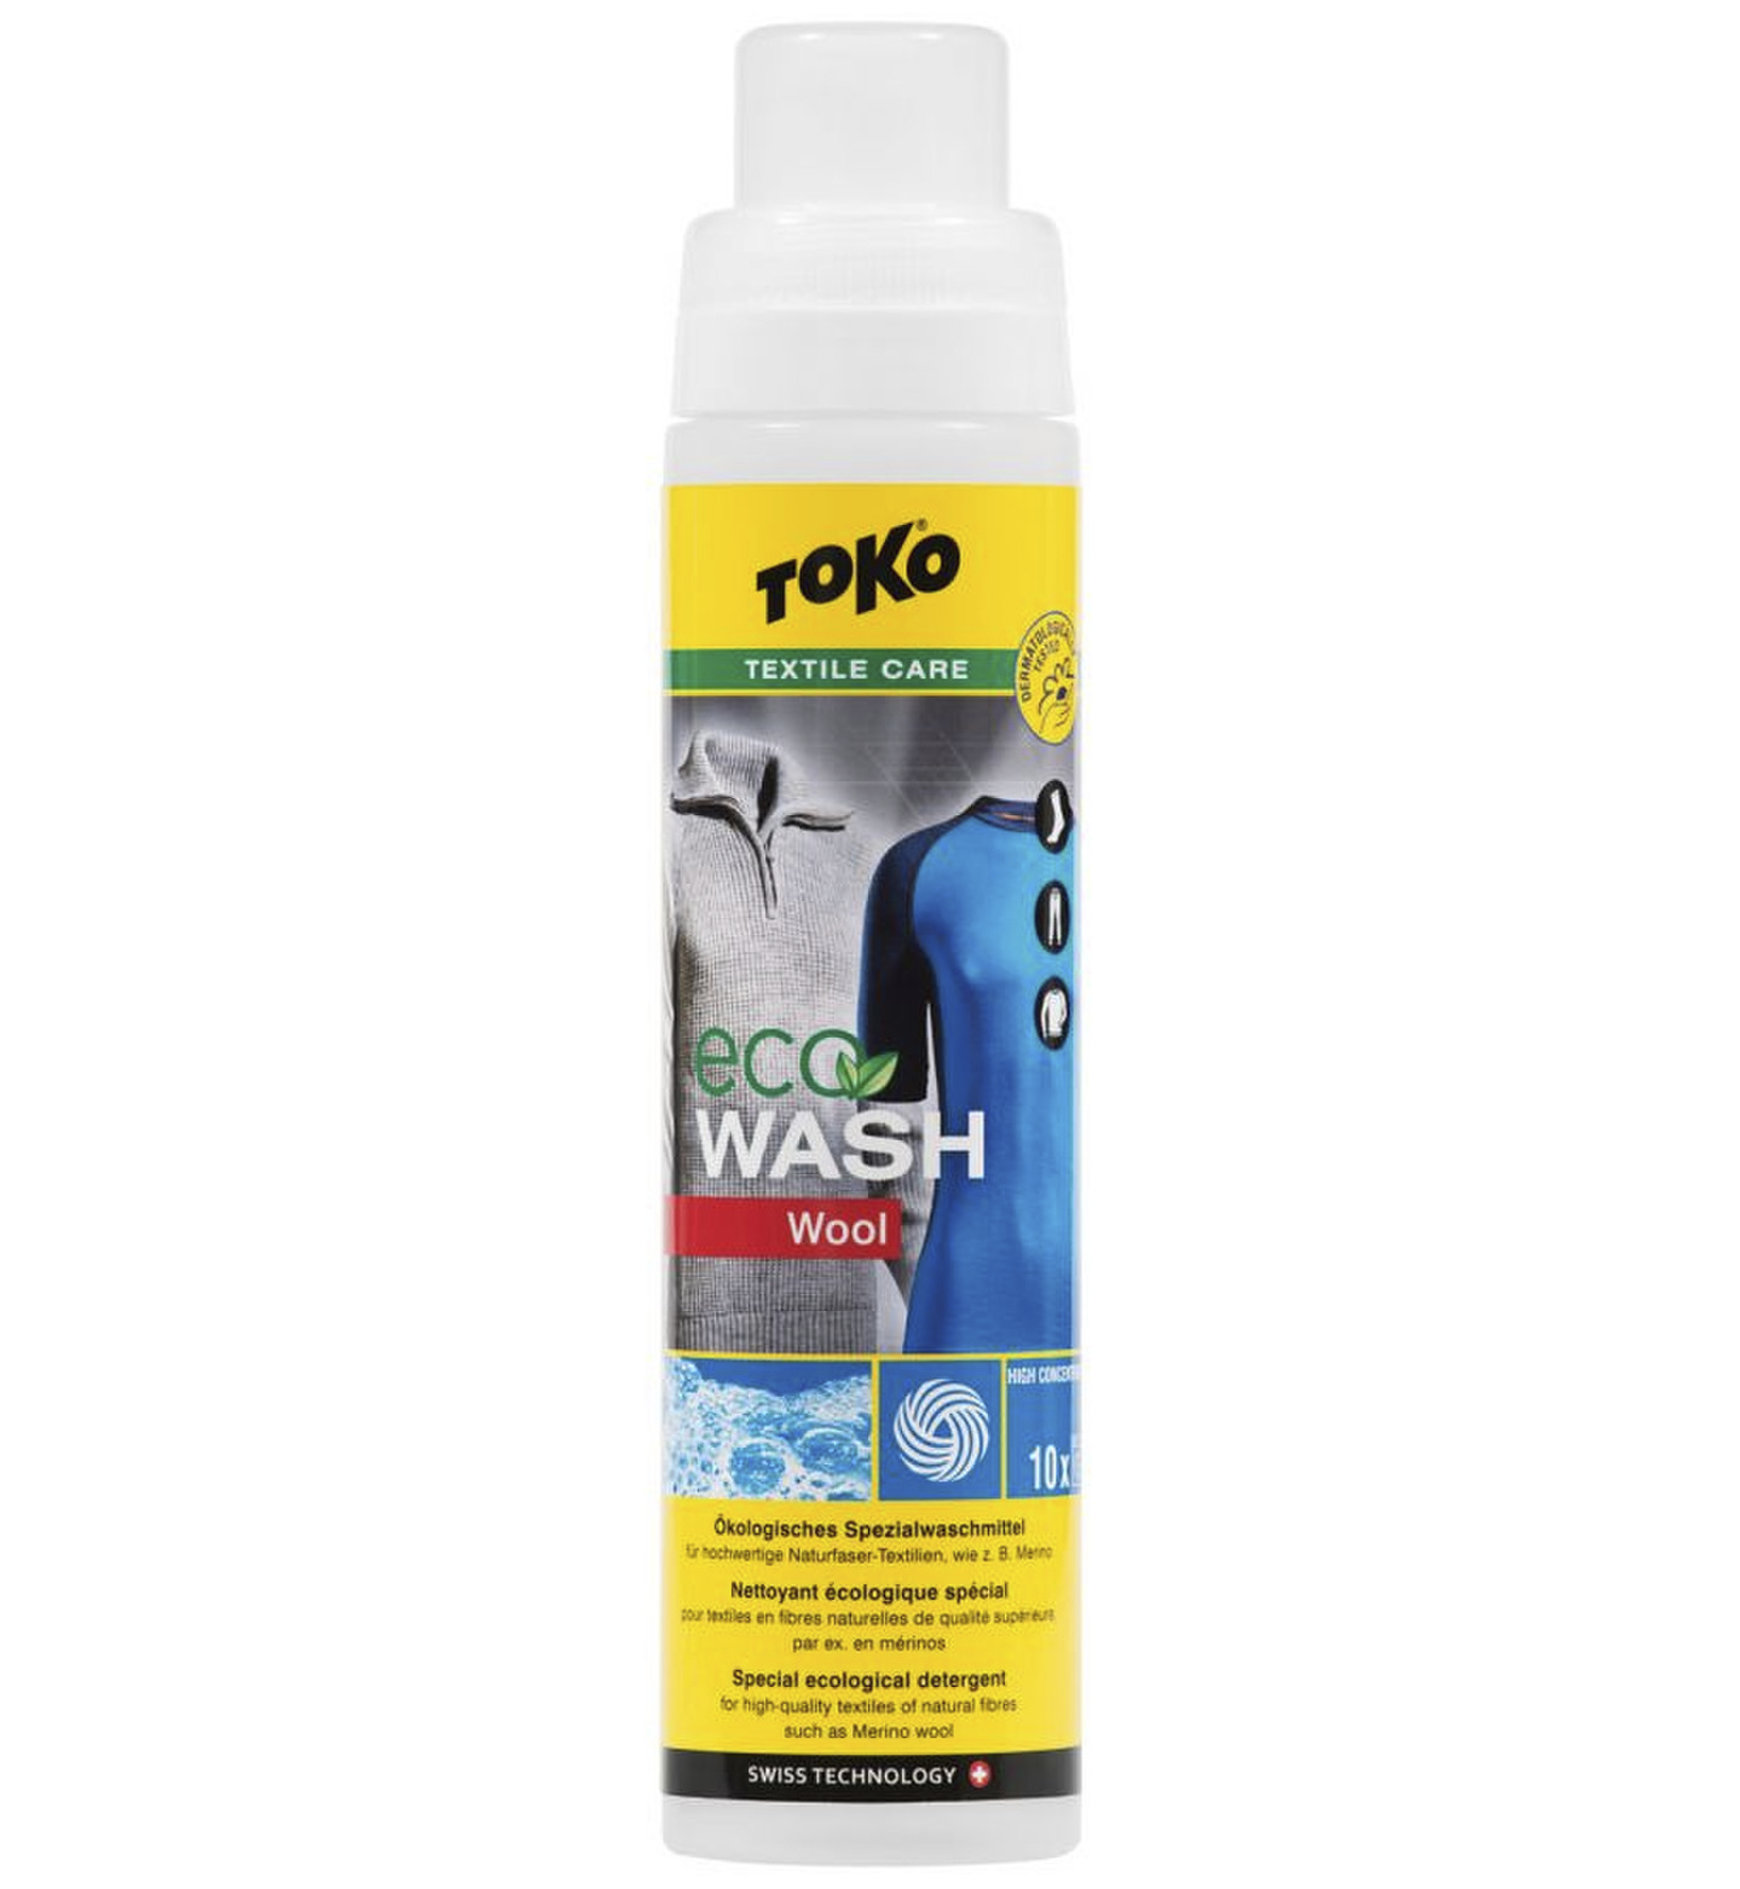 Toko Eco Wool Wash 250 ml Spezialwaschmittel